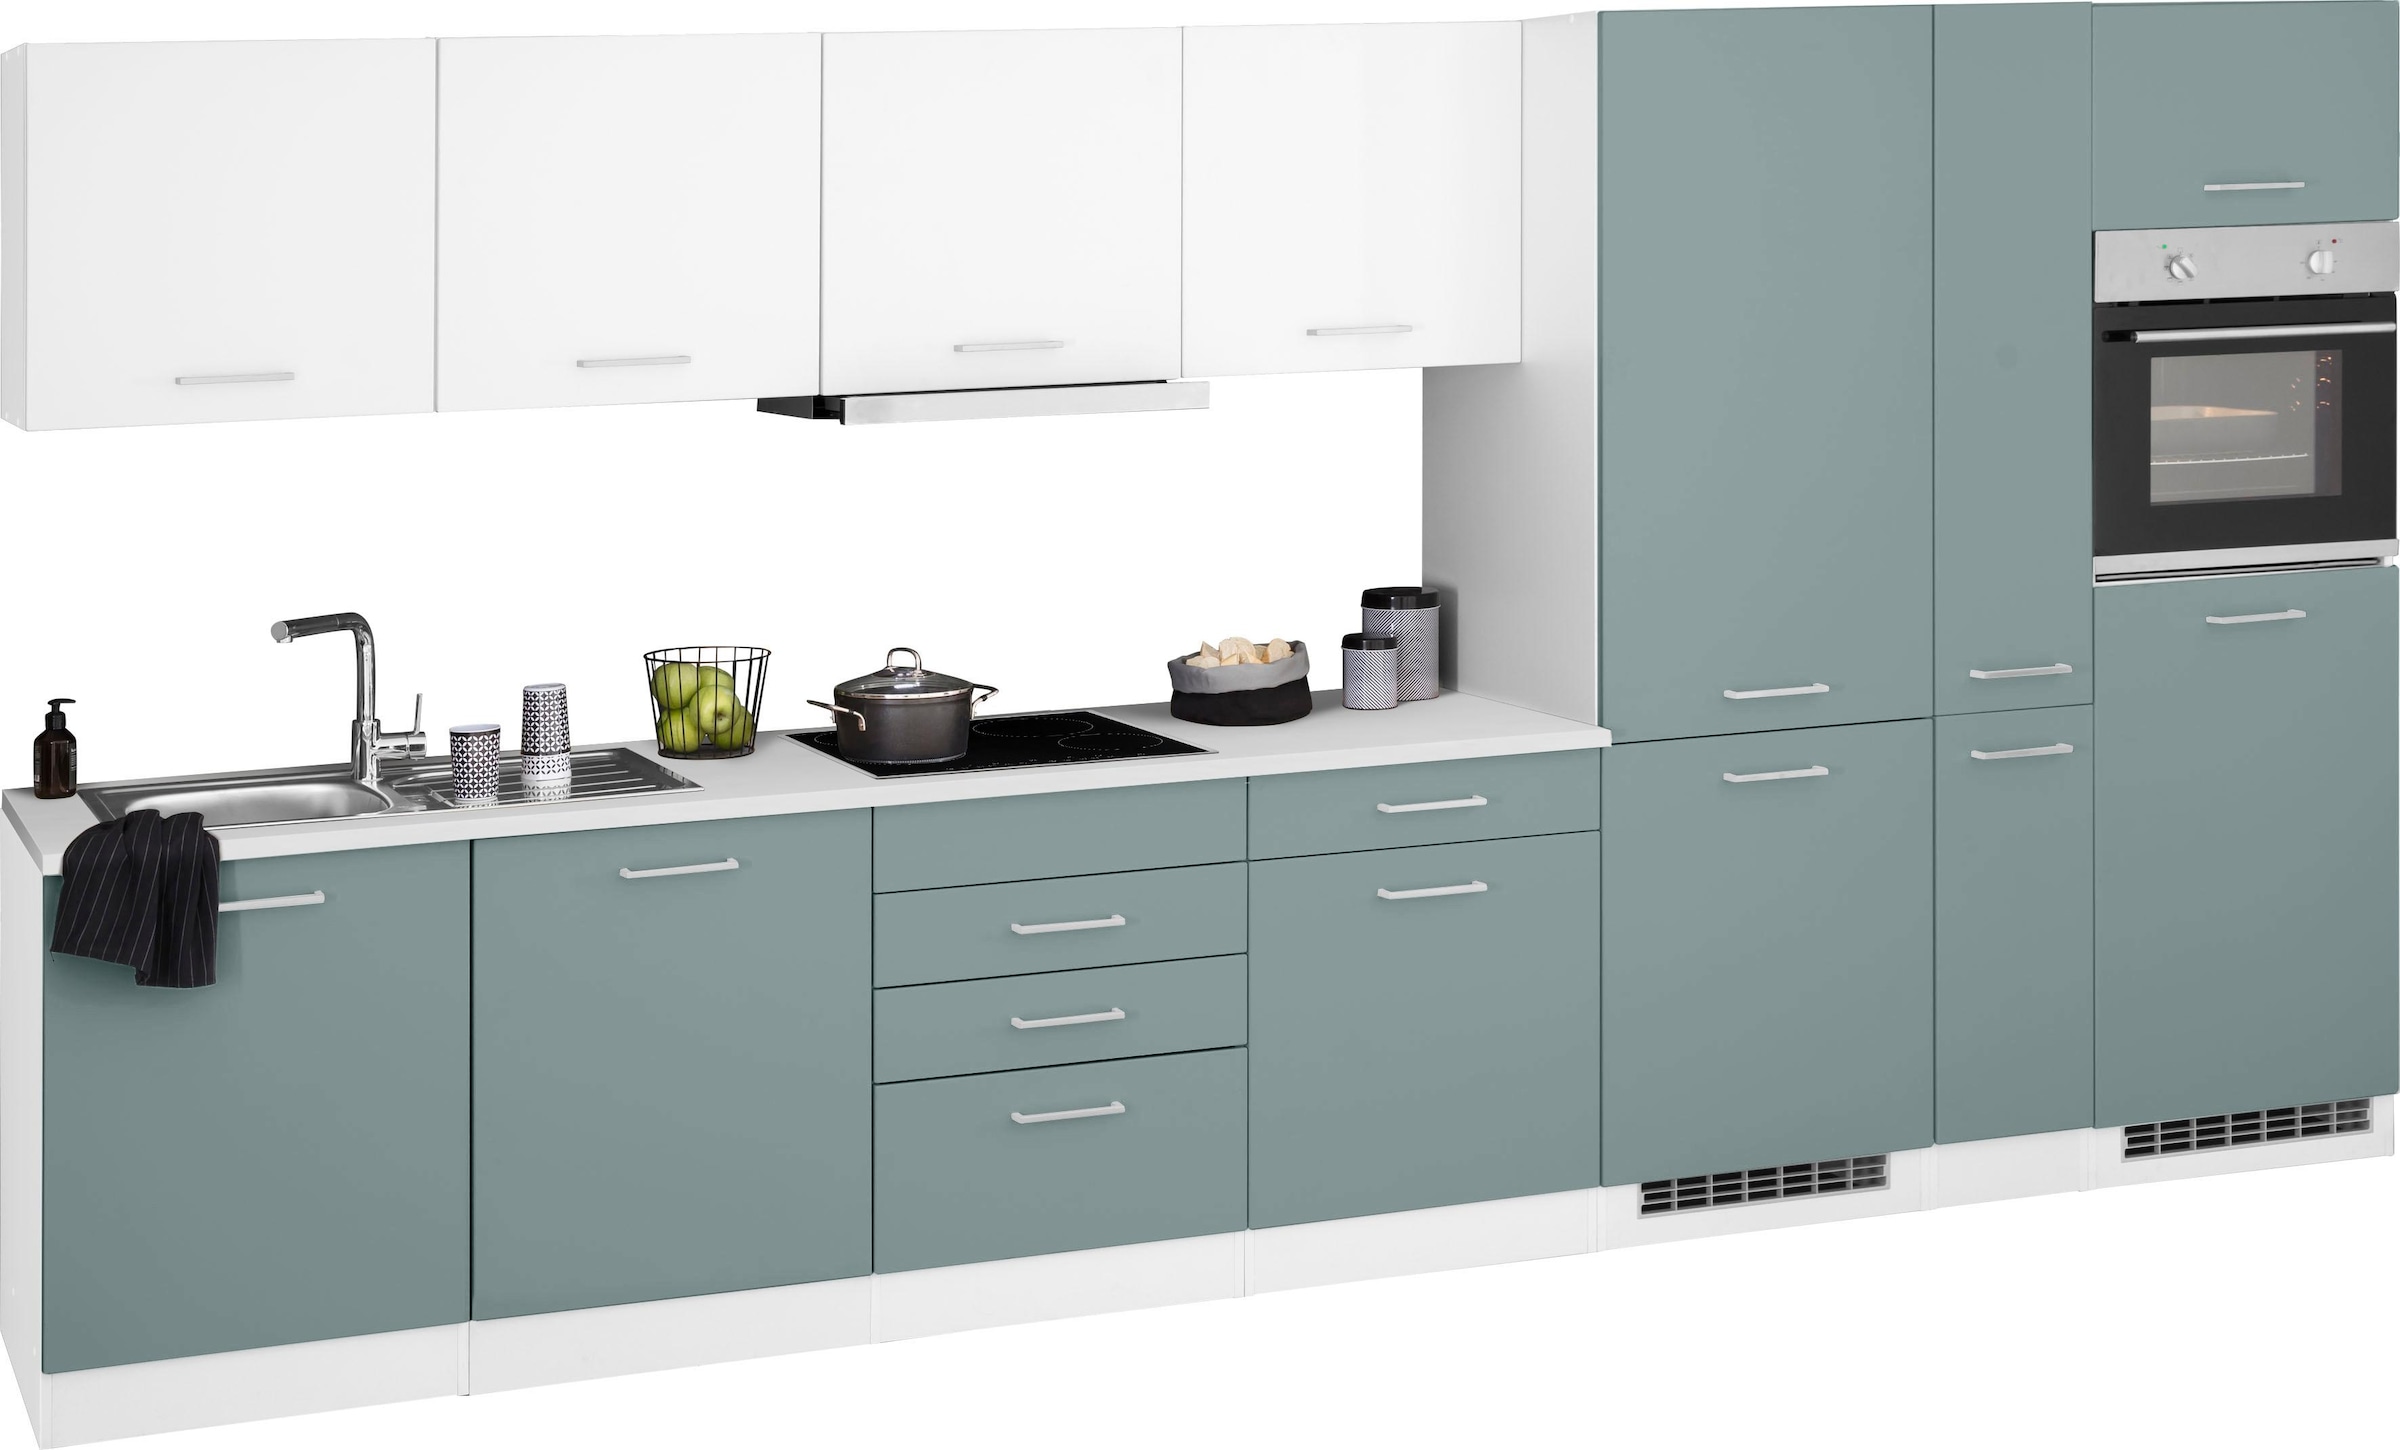 Küchenzeile »Visby«, mit E-Geräten, Breite 390 cm inkl. Kühl/Gefrierkombination